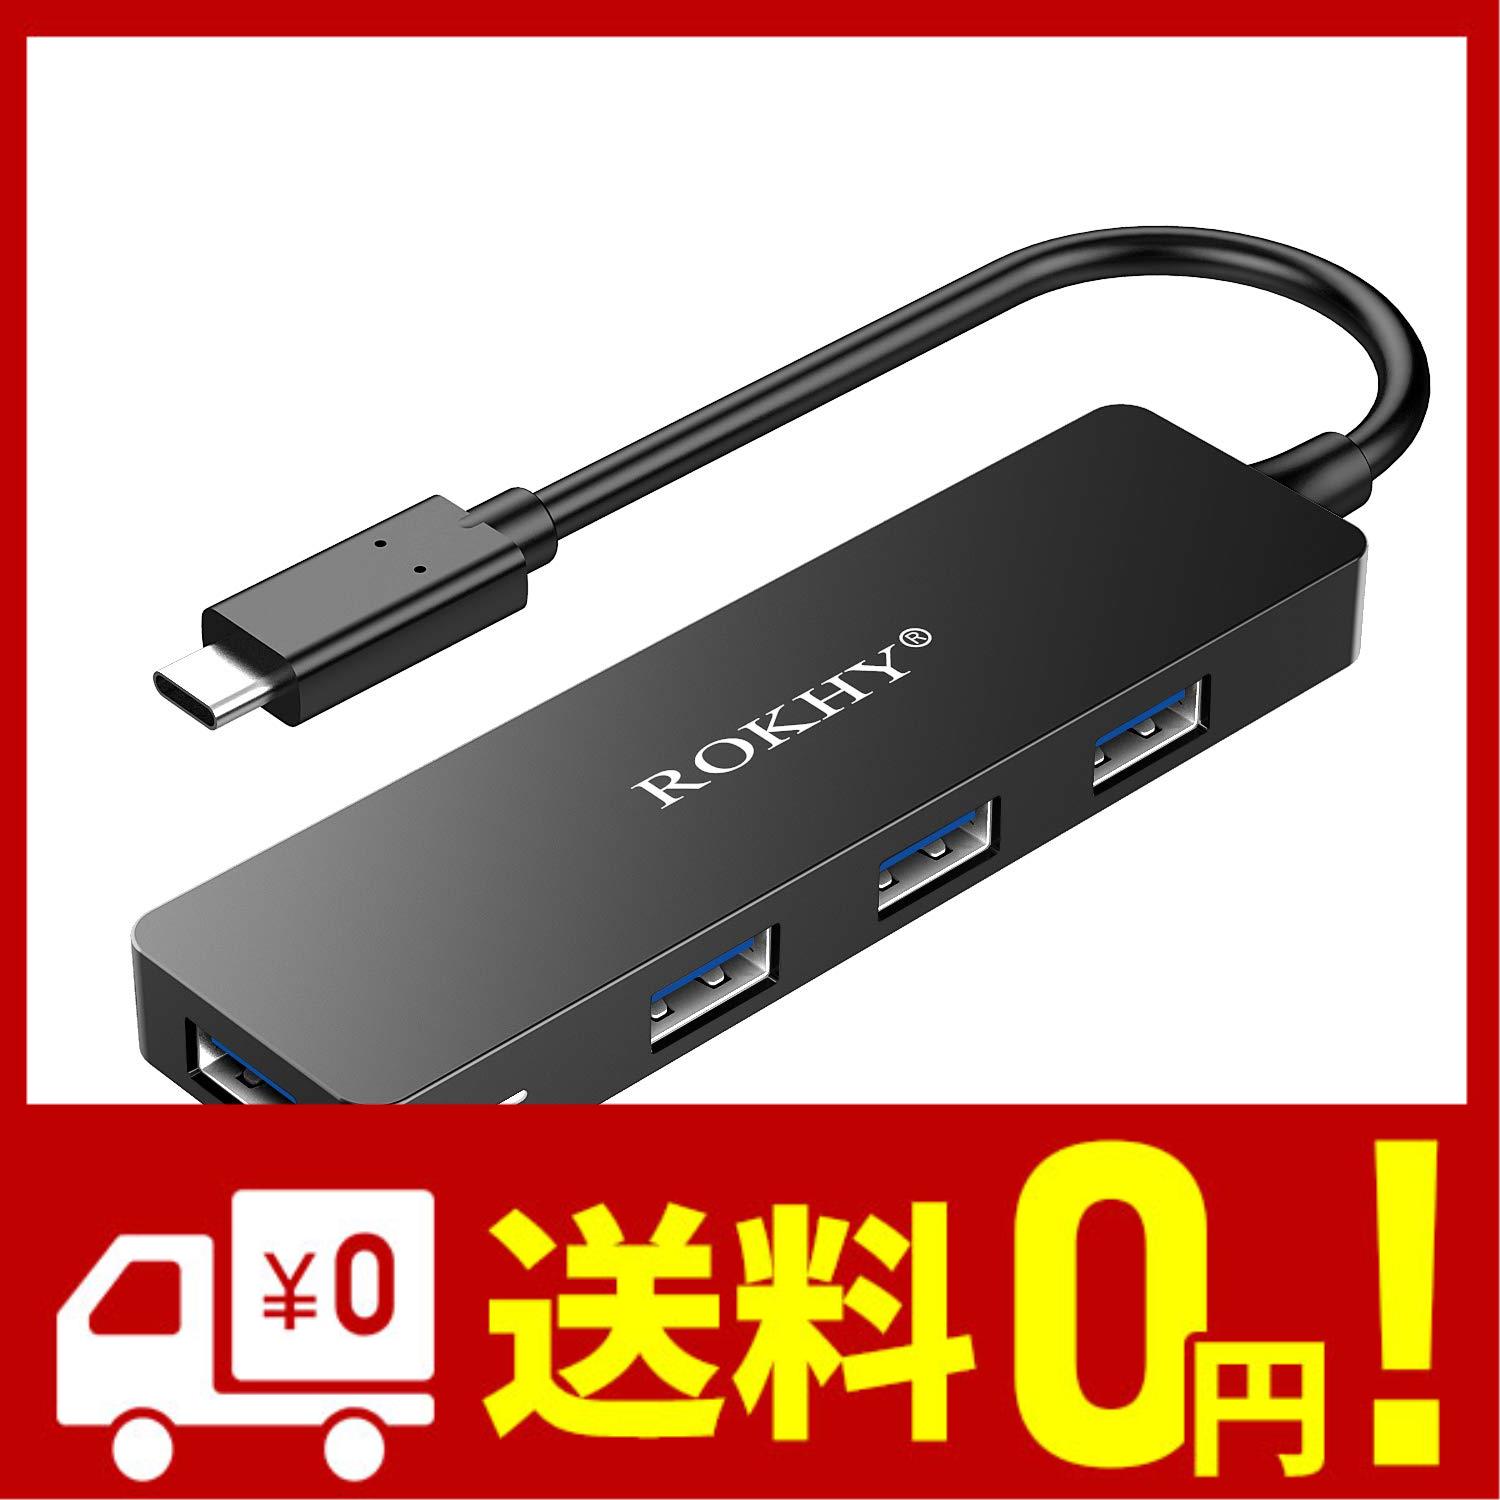 ROKHY USB C ハブ 4-ポート USB 3.0 ハブ 超薄型 データ USB ハブ プロ ラップトップ アンドロイド スマートフォン用 4 イン 1 ブラック